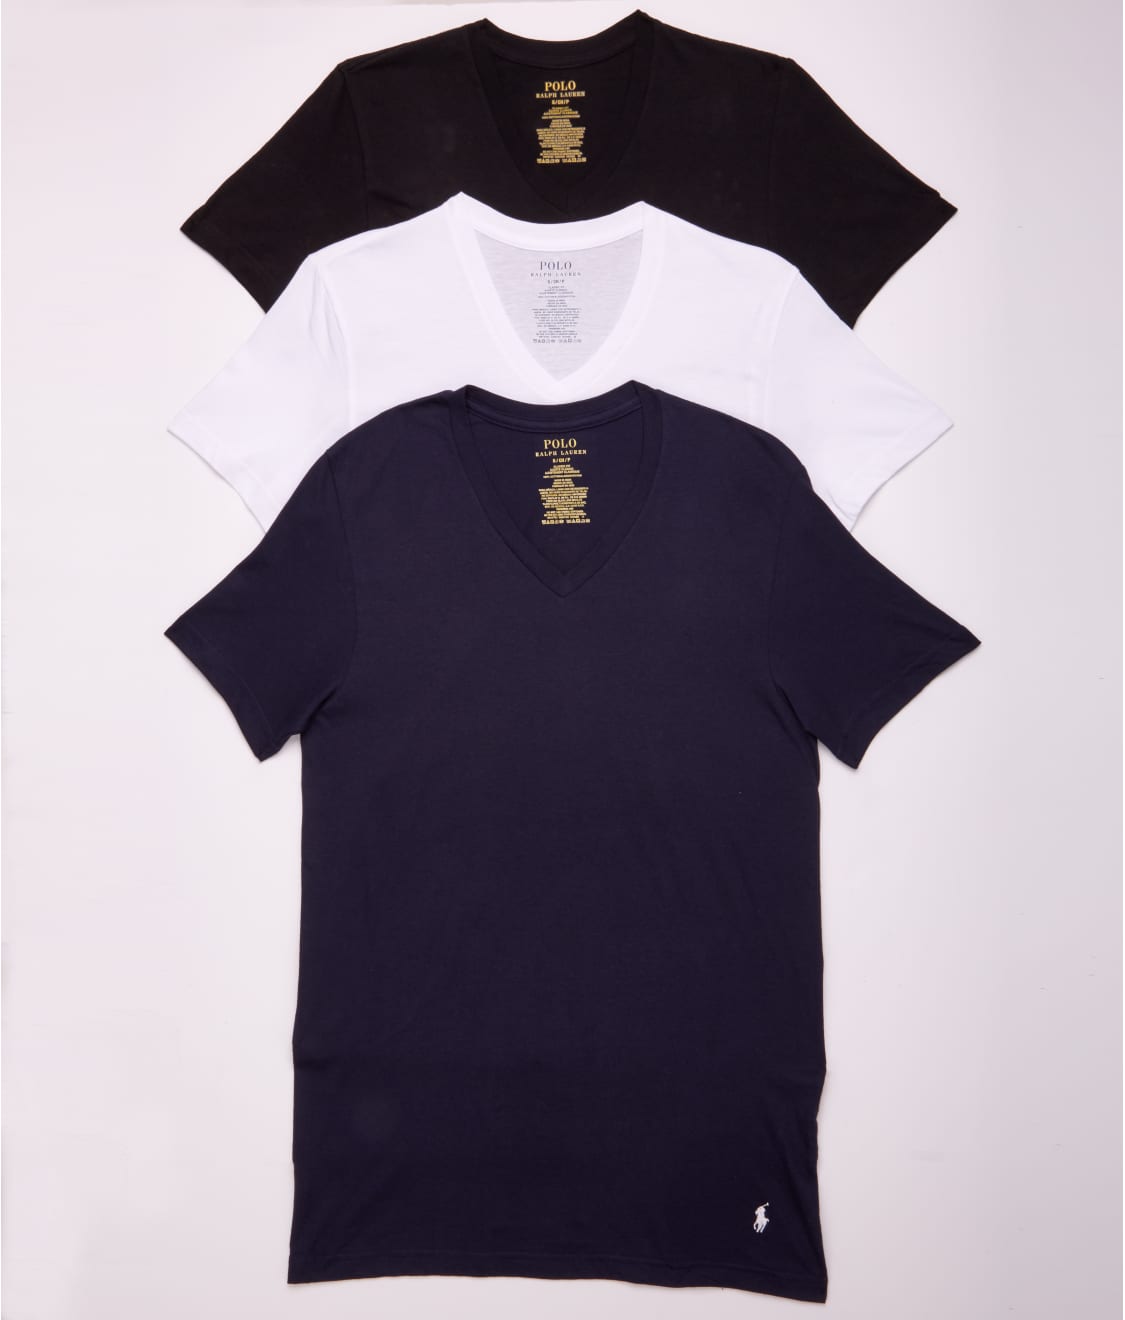 Polo Ralph Lauren: Classic Fit Cotton V-Neck T-Shirts 3-Pack RCVNP3